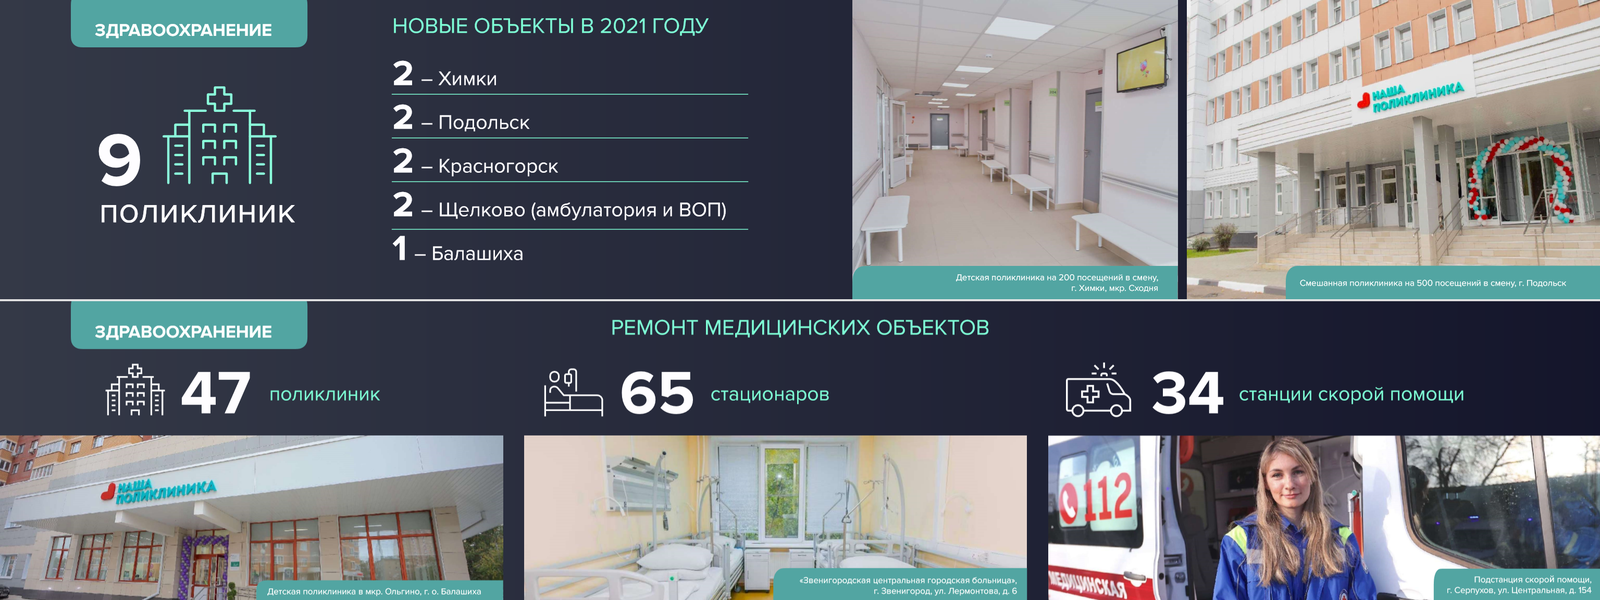 Андрей Воробьев губернатор московской области - Современная медицина: больше клиник, больше бригад, лучше оборудование